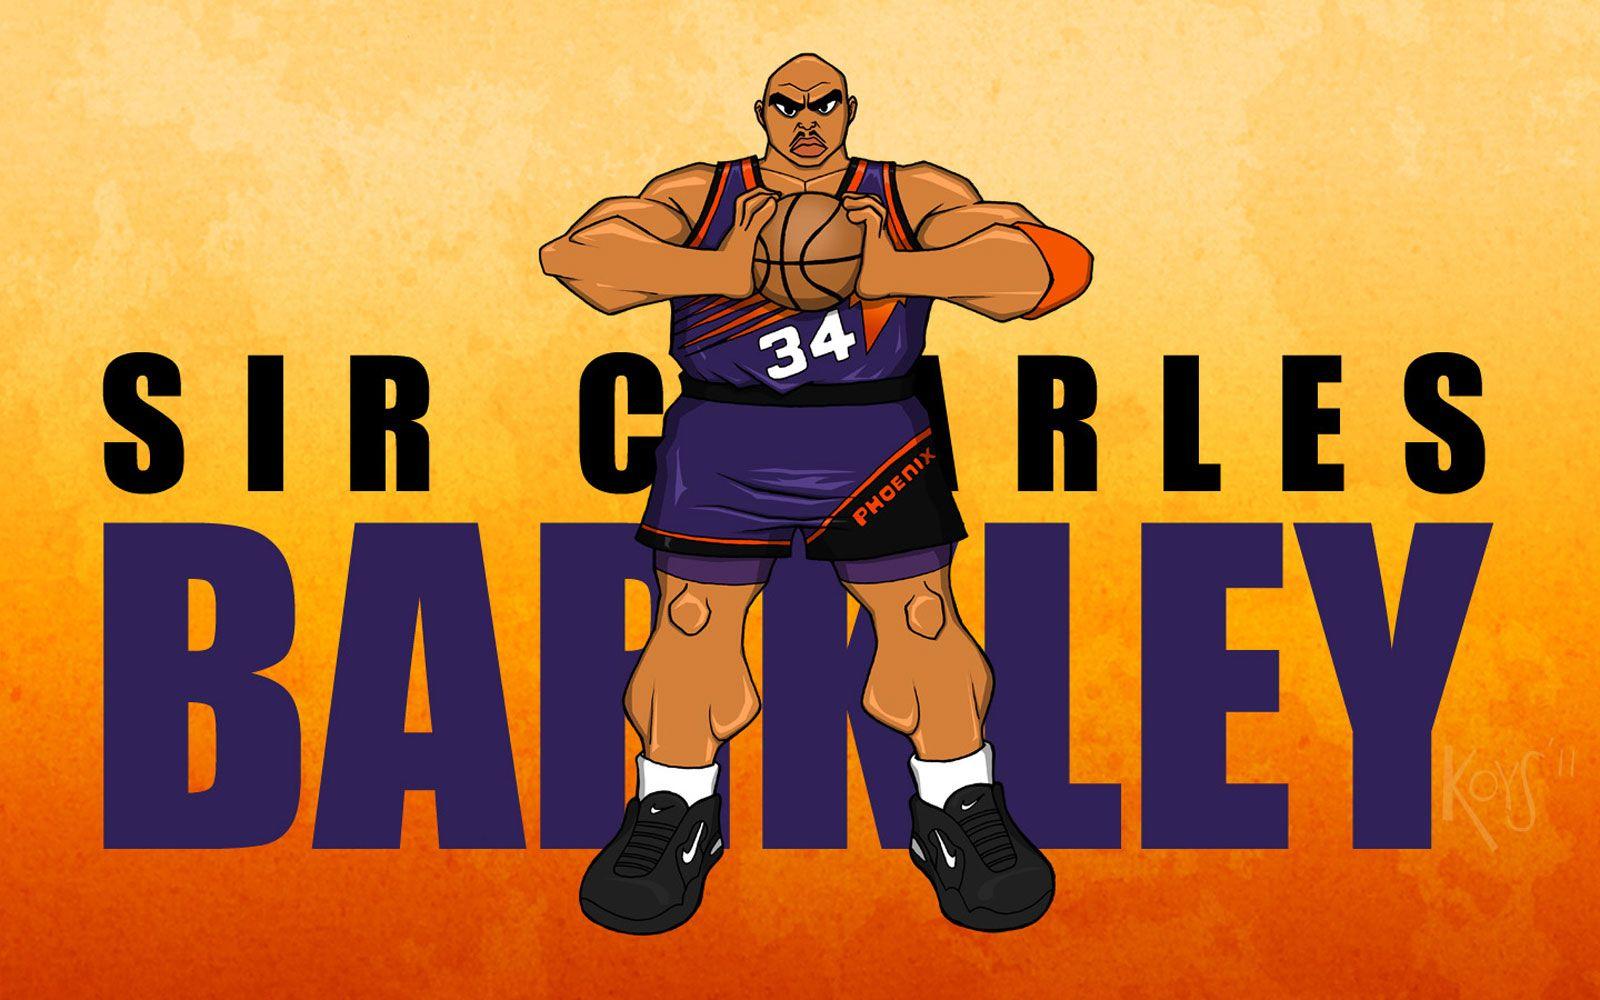 Charles Barkley Wallpaper. Basketball Wallpaper at